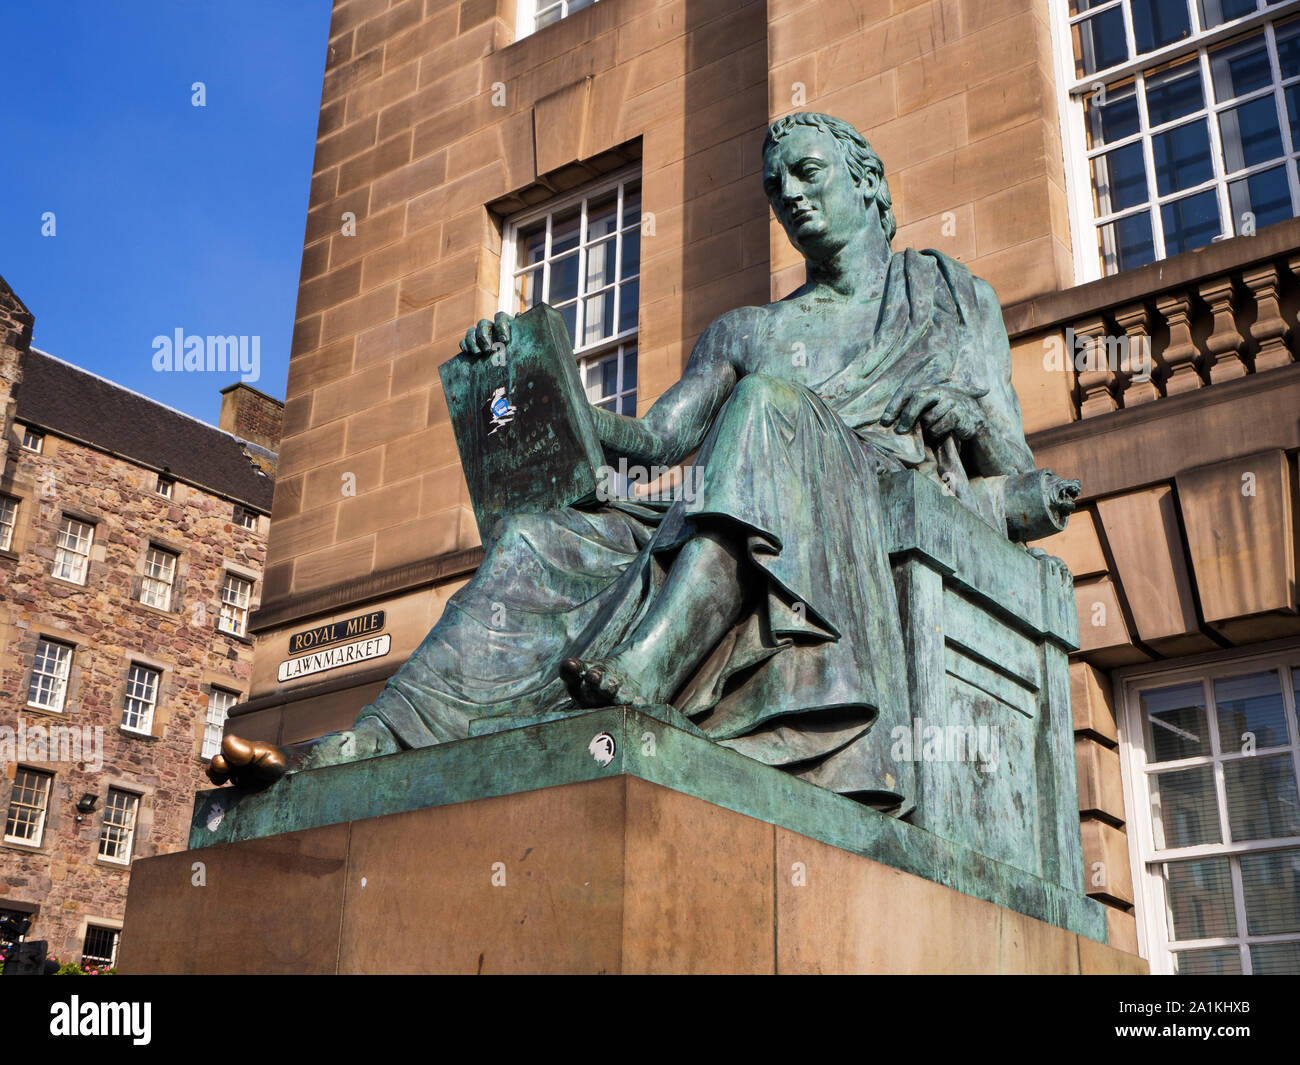 Statue des Philosophen David Hume am Lawnmarket der Royal Mile in Edinburgh Schottland Stockfoto